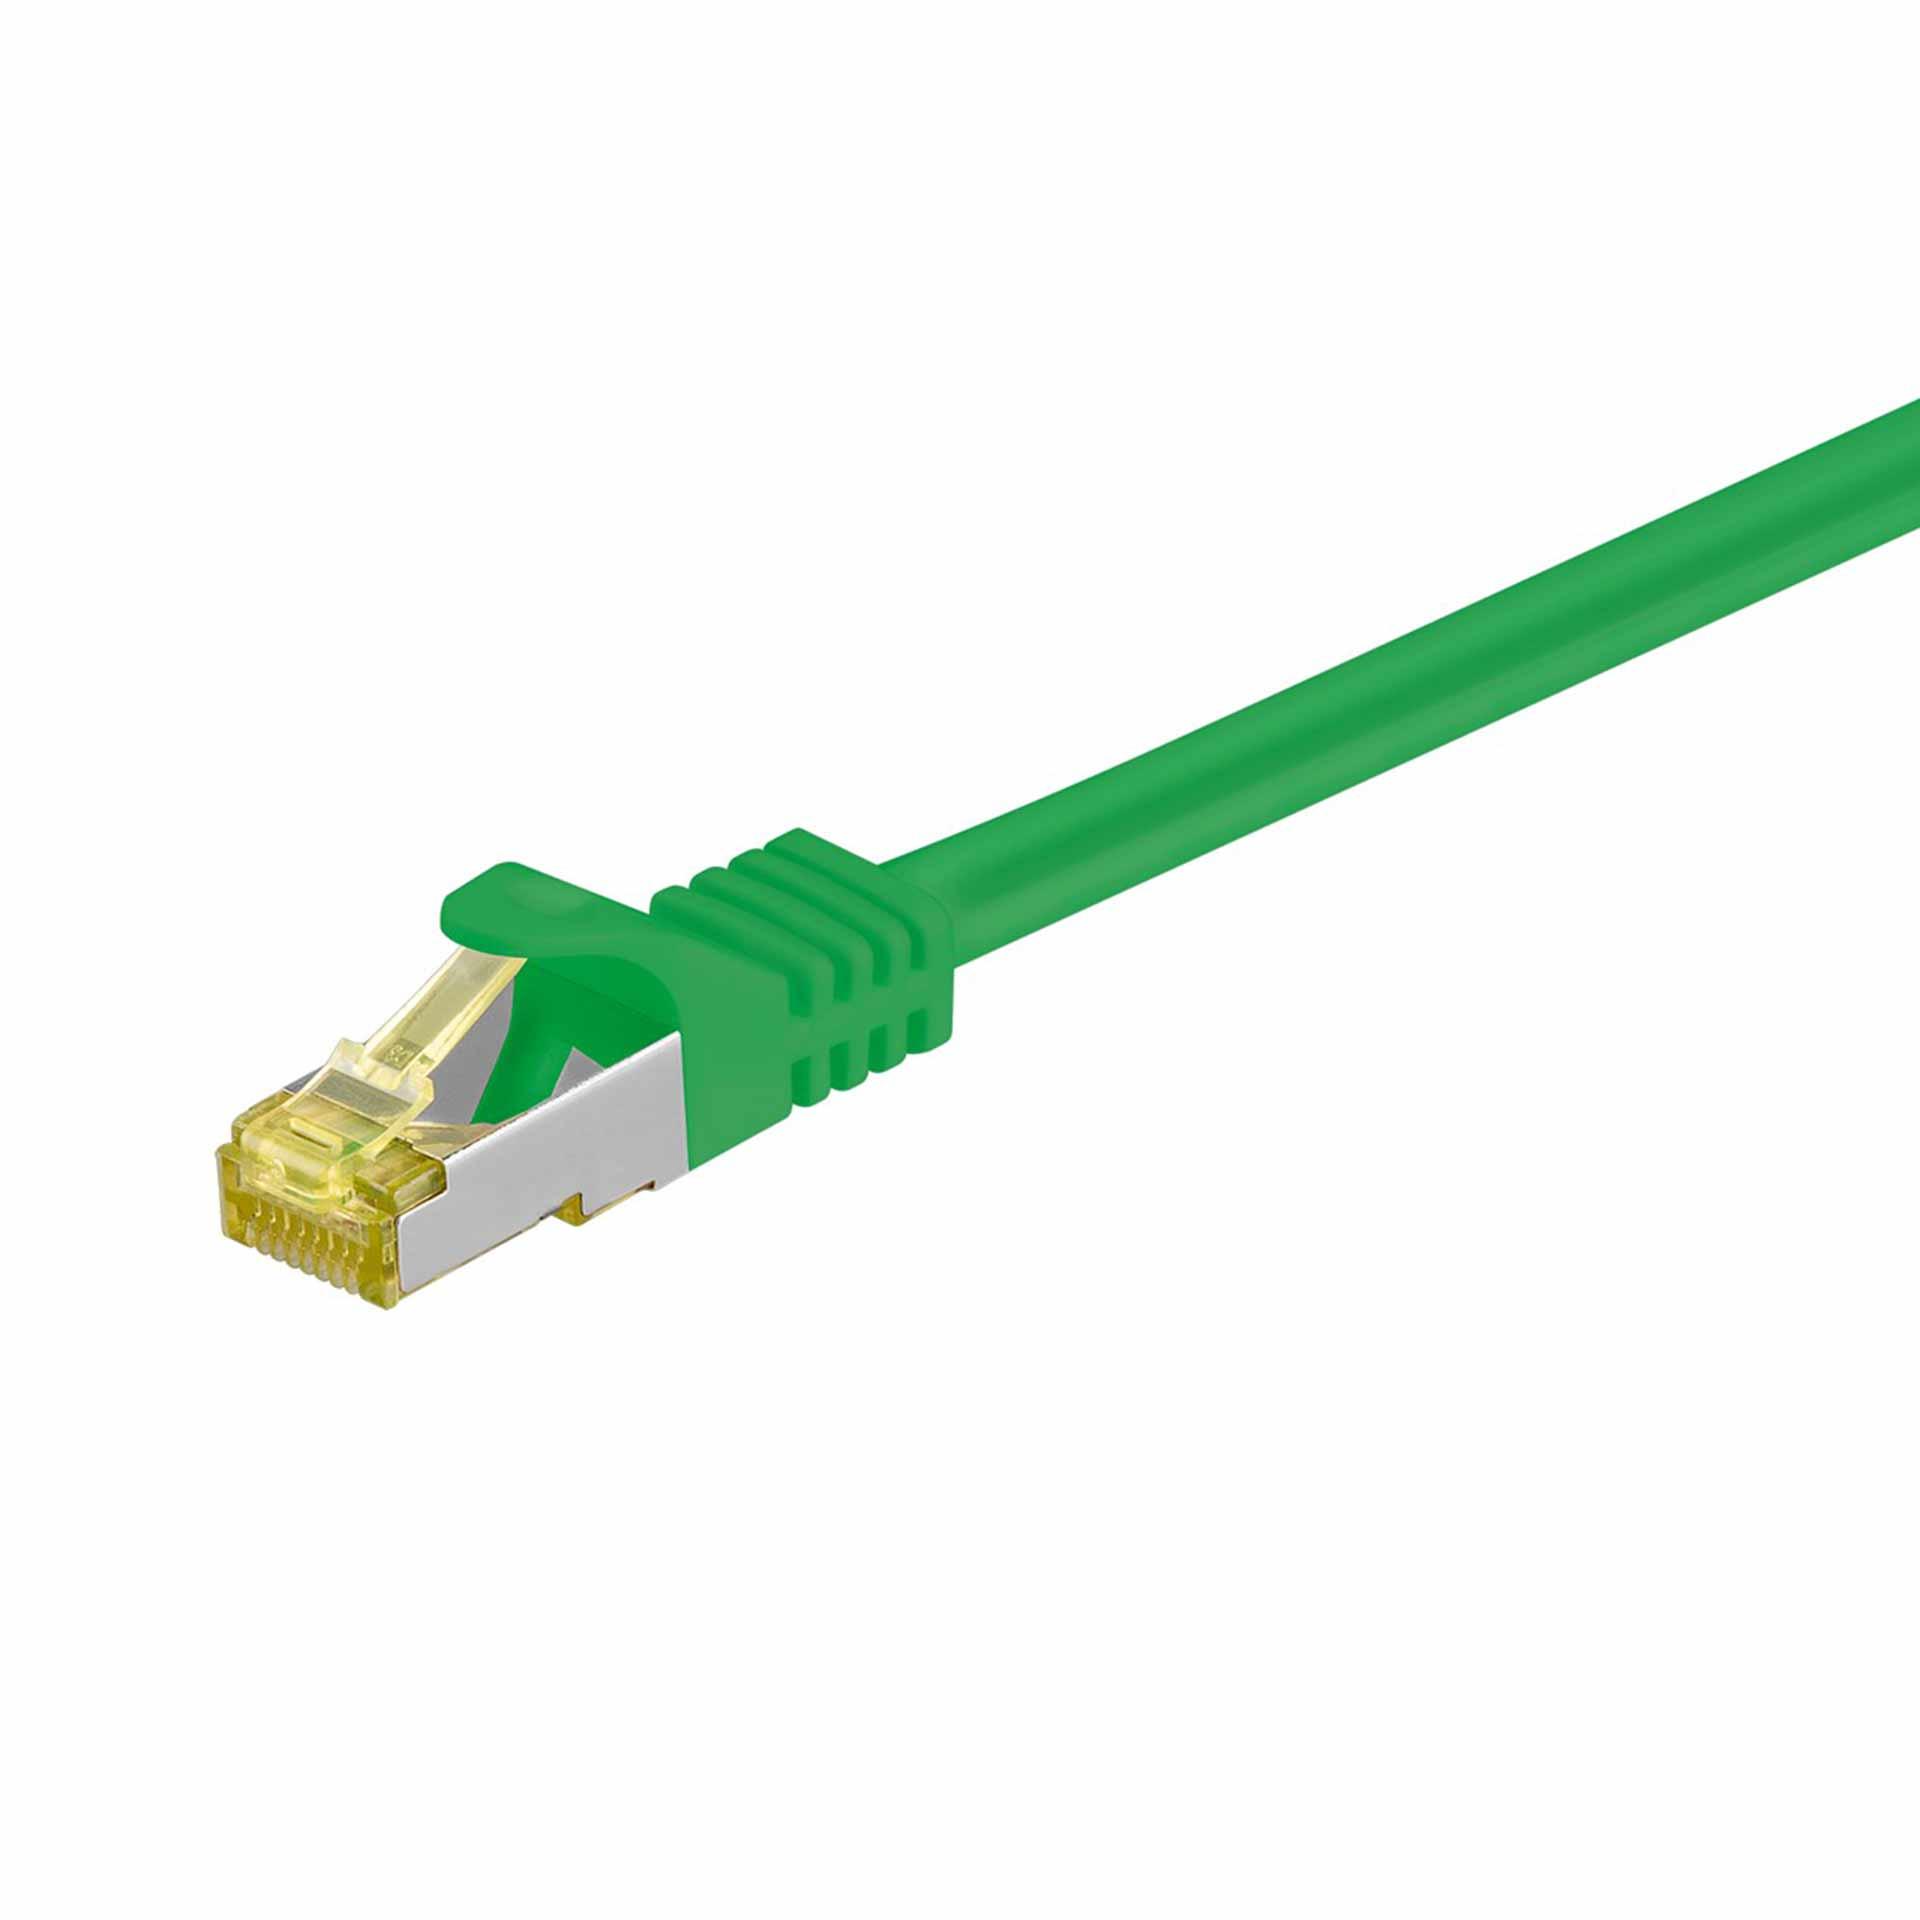 CAT 6A câble de raccordement S/FTP (PiMF),1500mm, vert, LSZH sans halogène, 500 Mhz, câble CAT 7